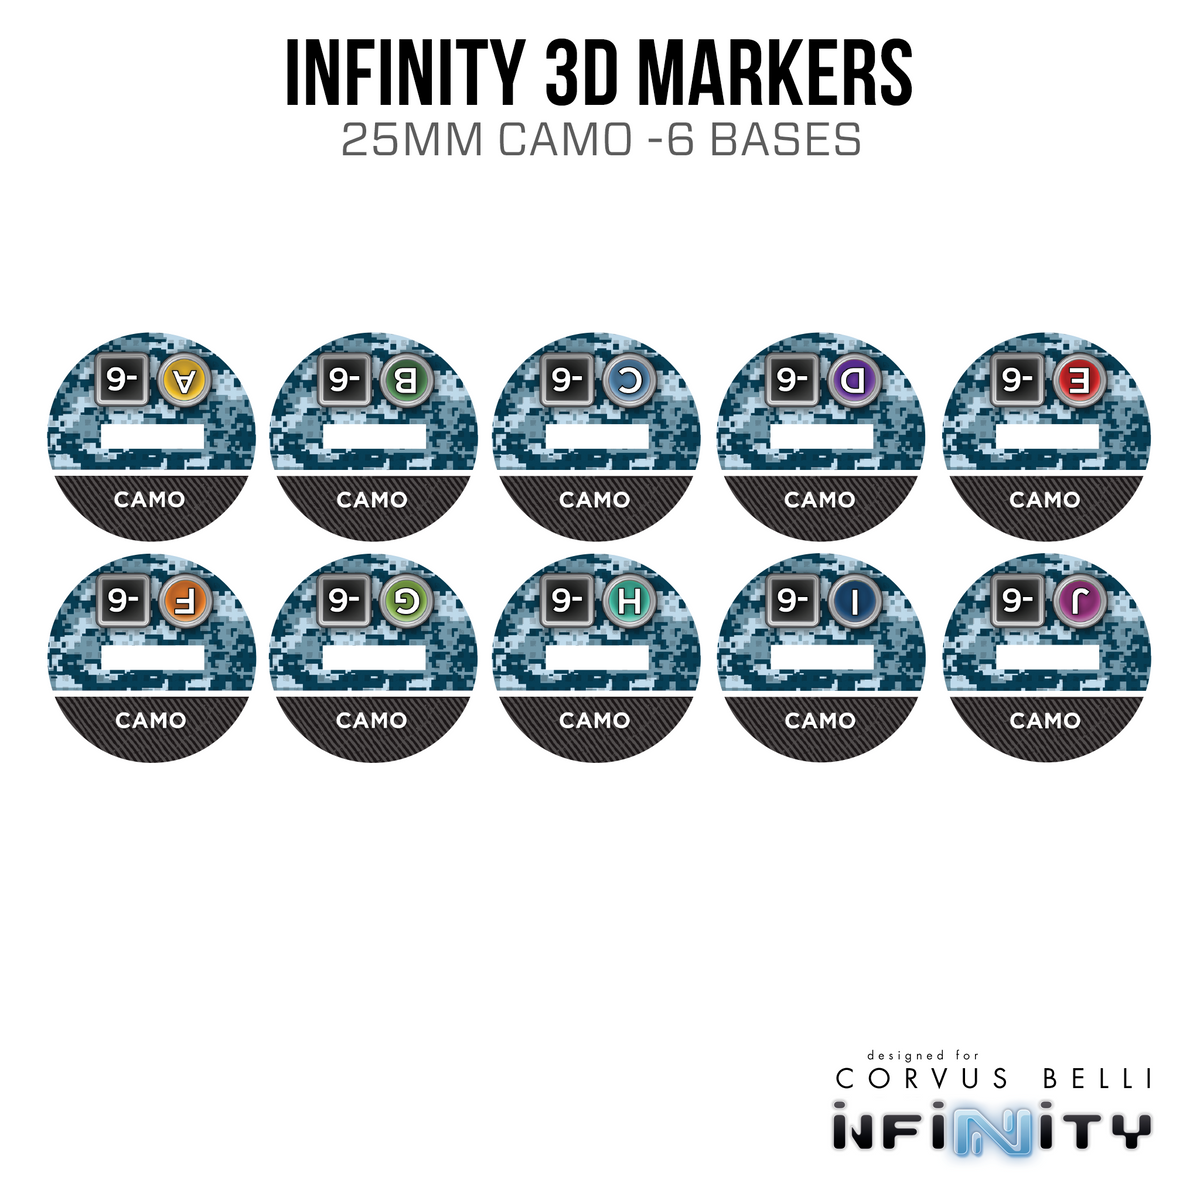 Marcadores 3D Infinity: Spektr (25 mm Camo -6, Cybermask)